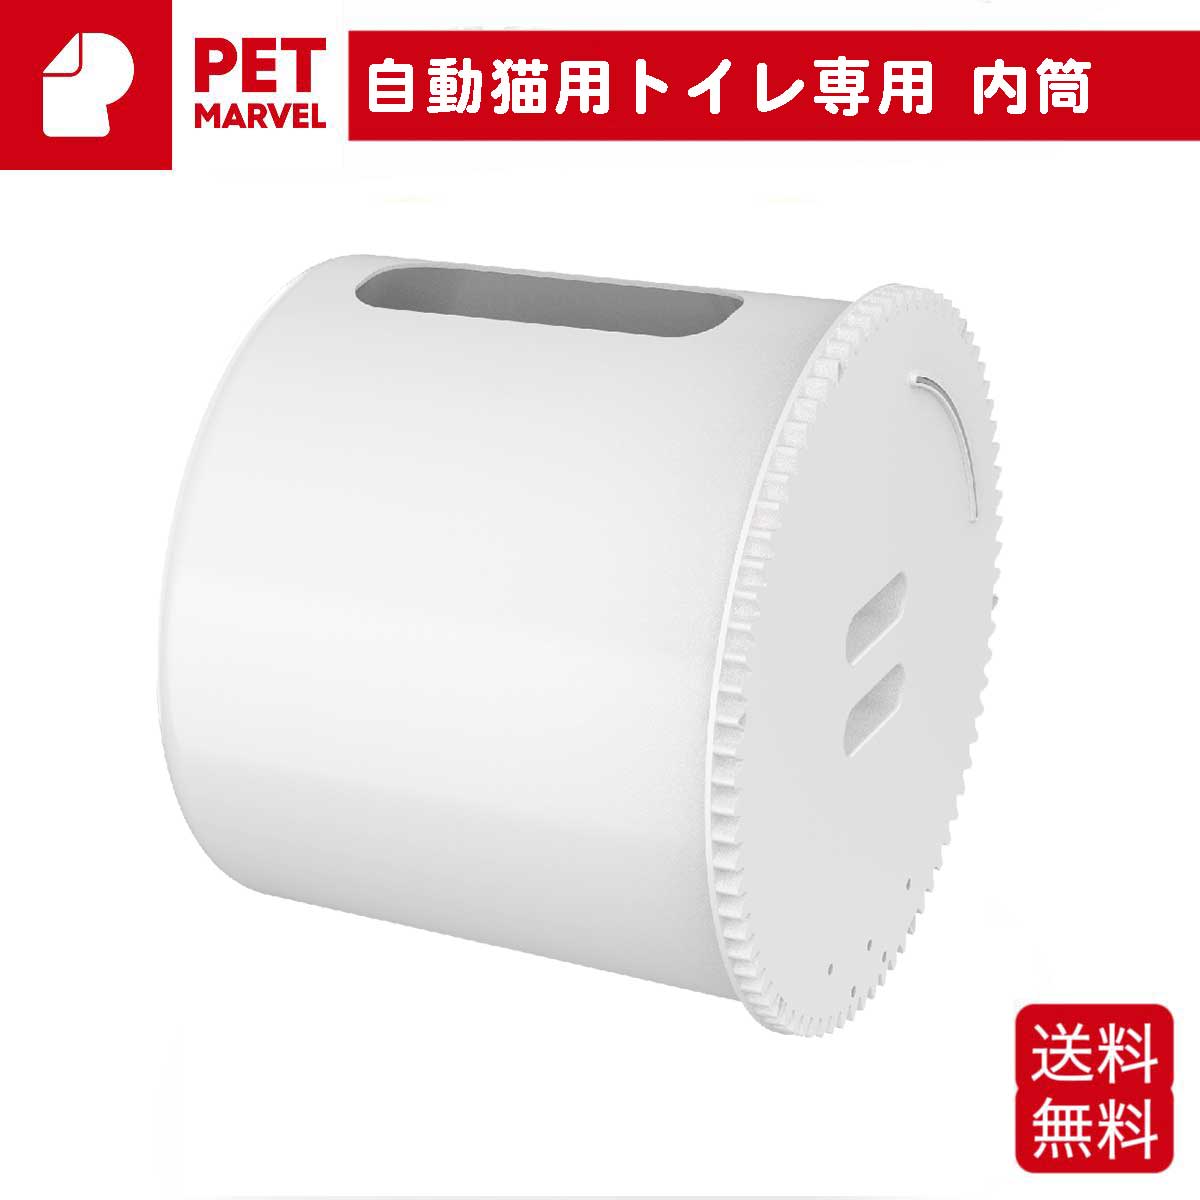 内筒 PET MARVEL 自動トイレ専用 交換用 ペットマーベル